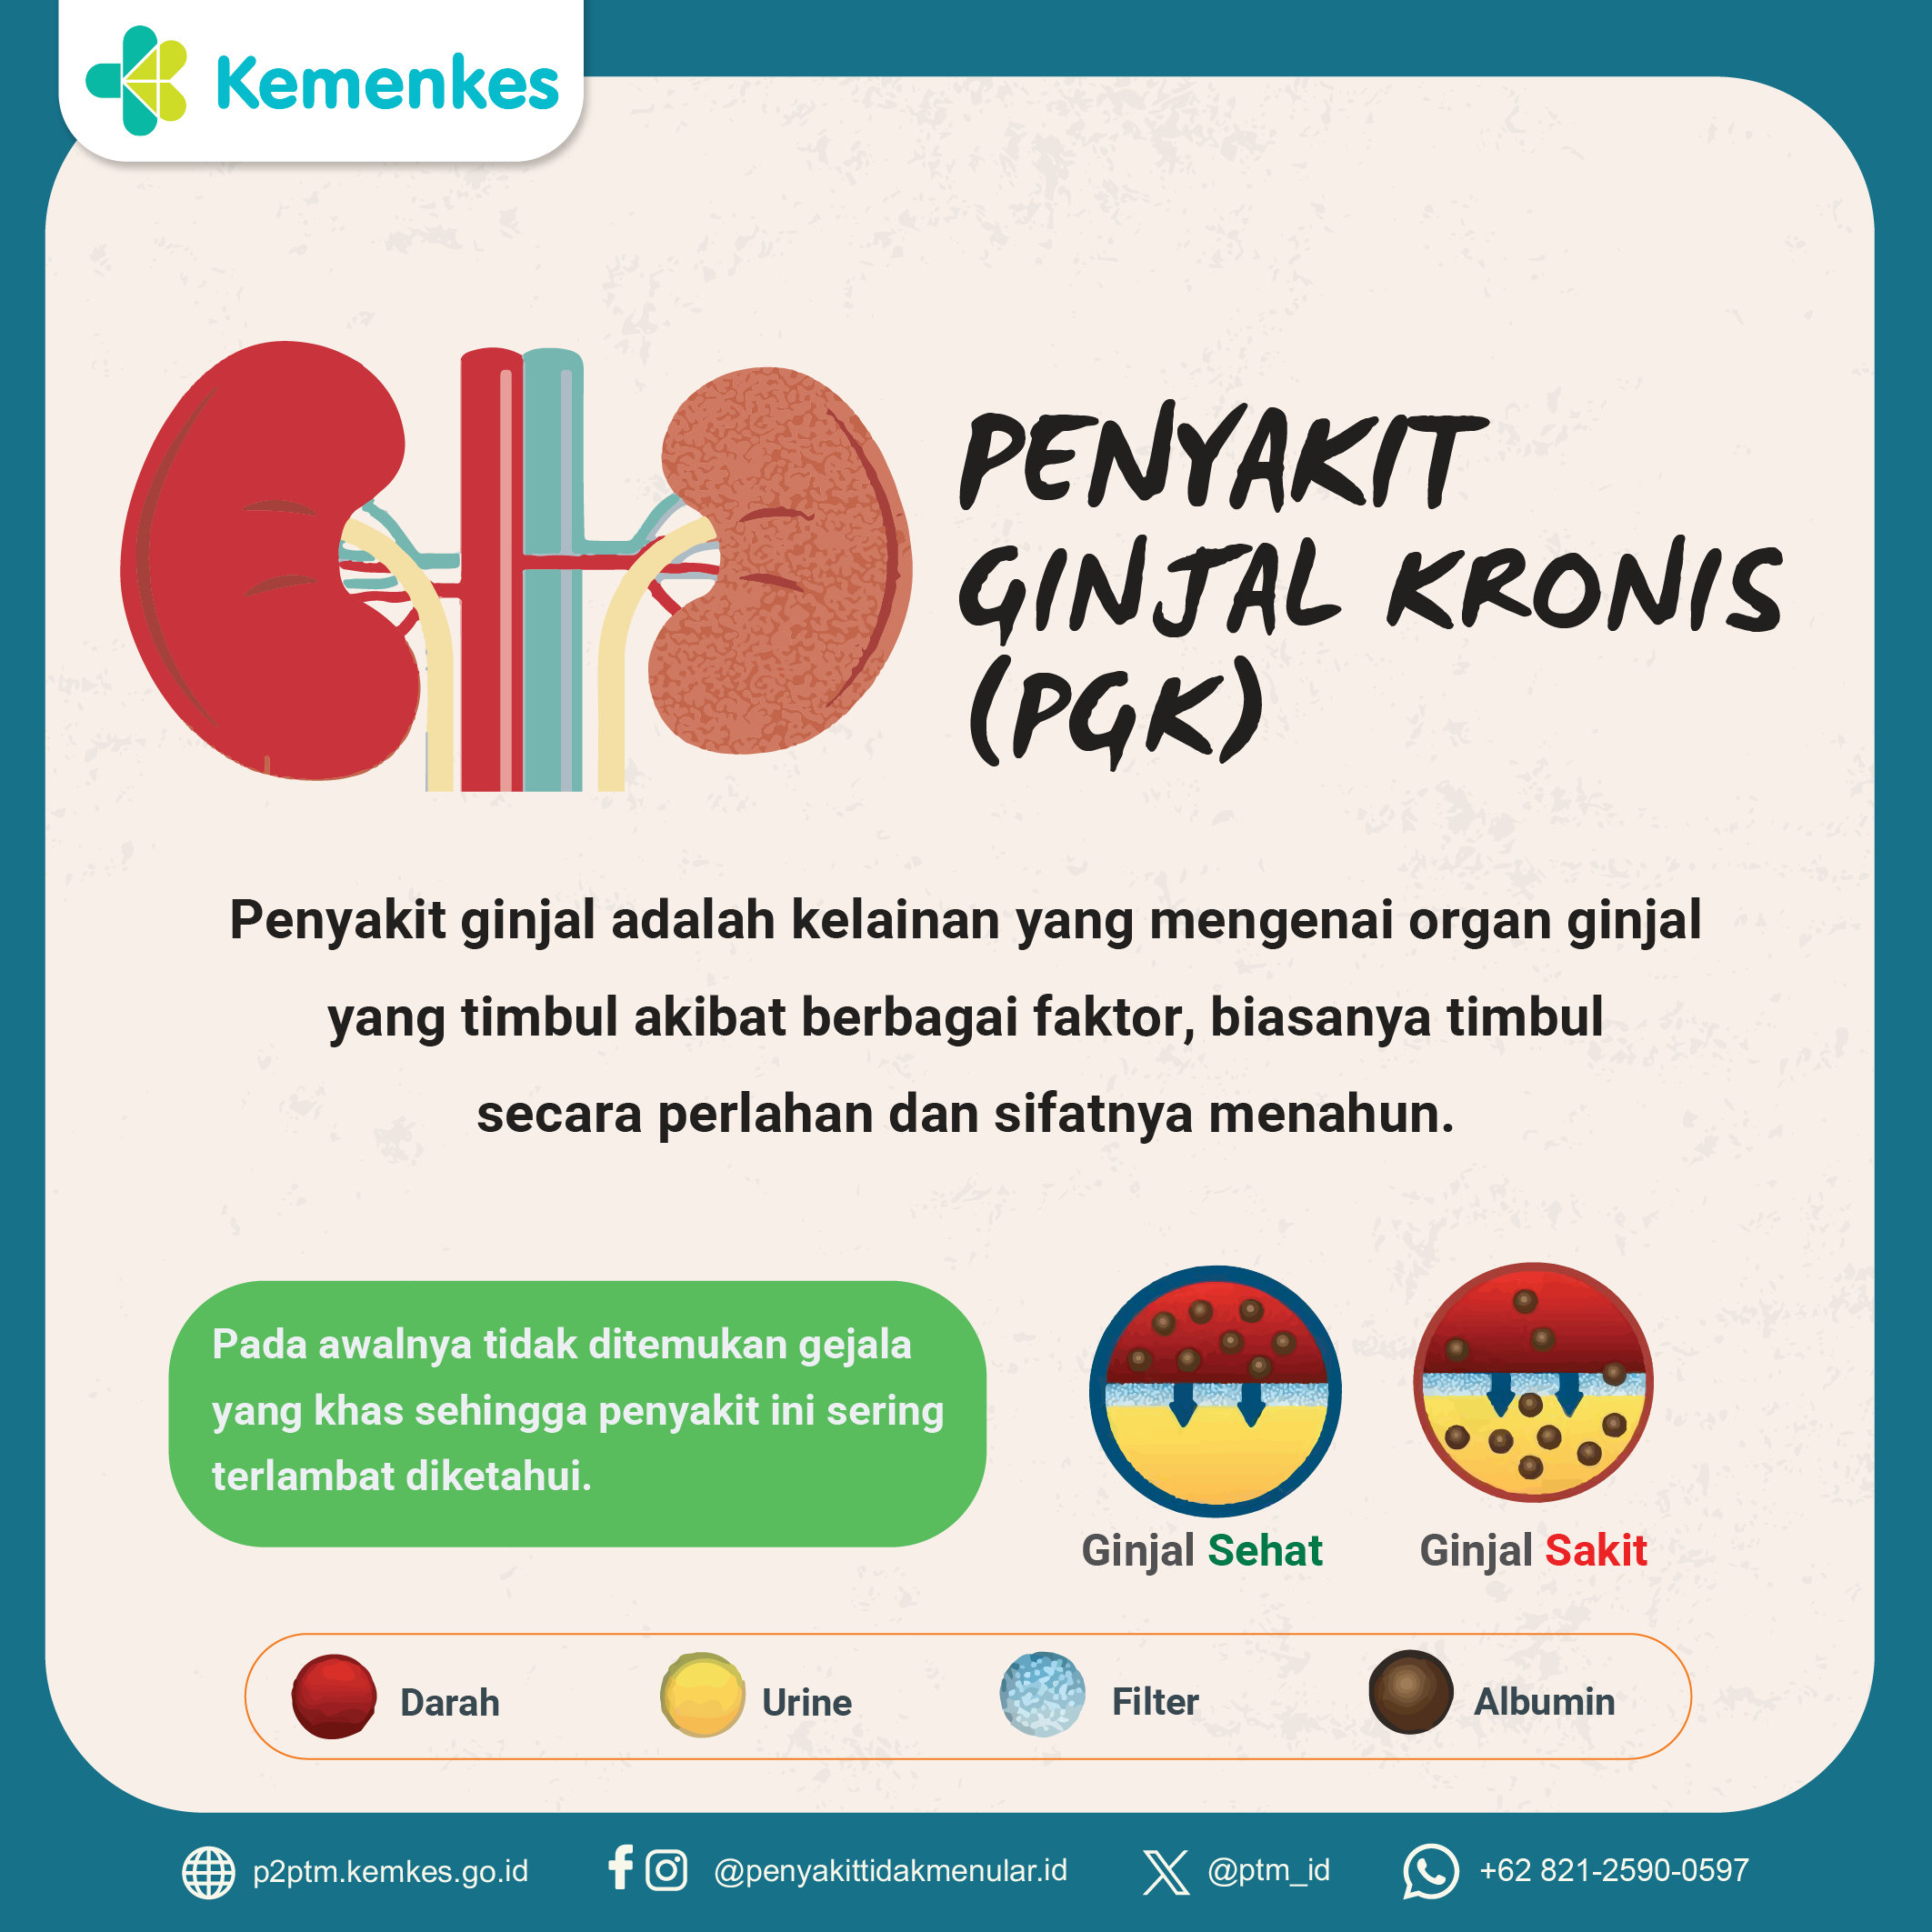 Penyakit Ginjal Kronis / PGK